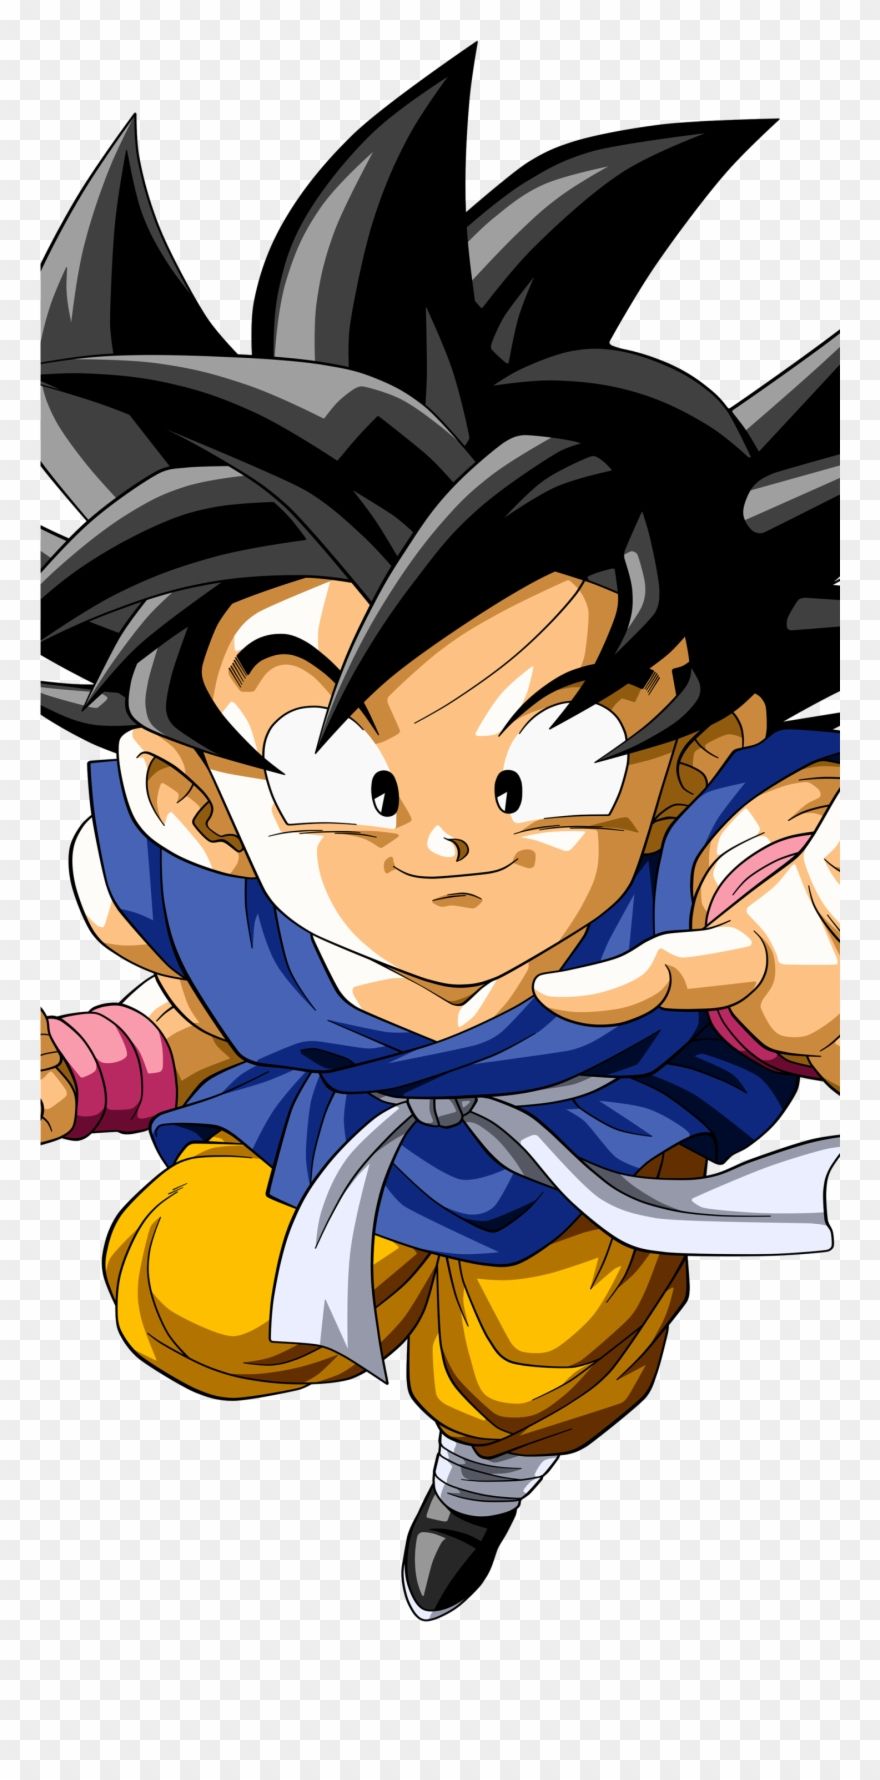 Kid Goku Anime / Dragon Ball Gt Mobile Wallpaper Wallpaper